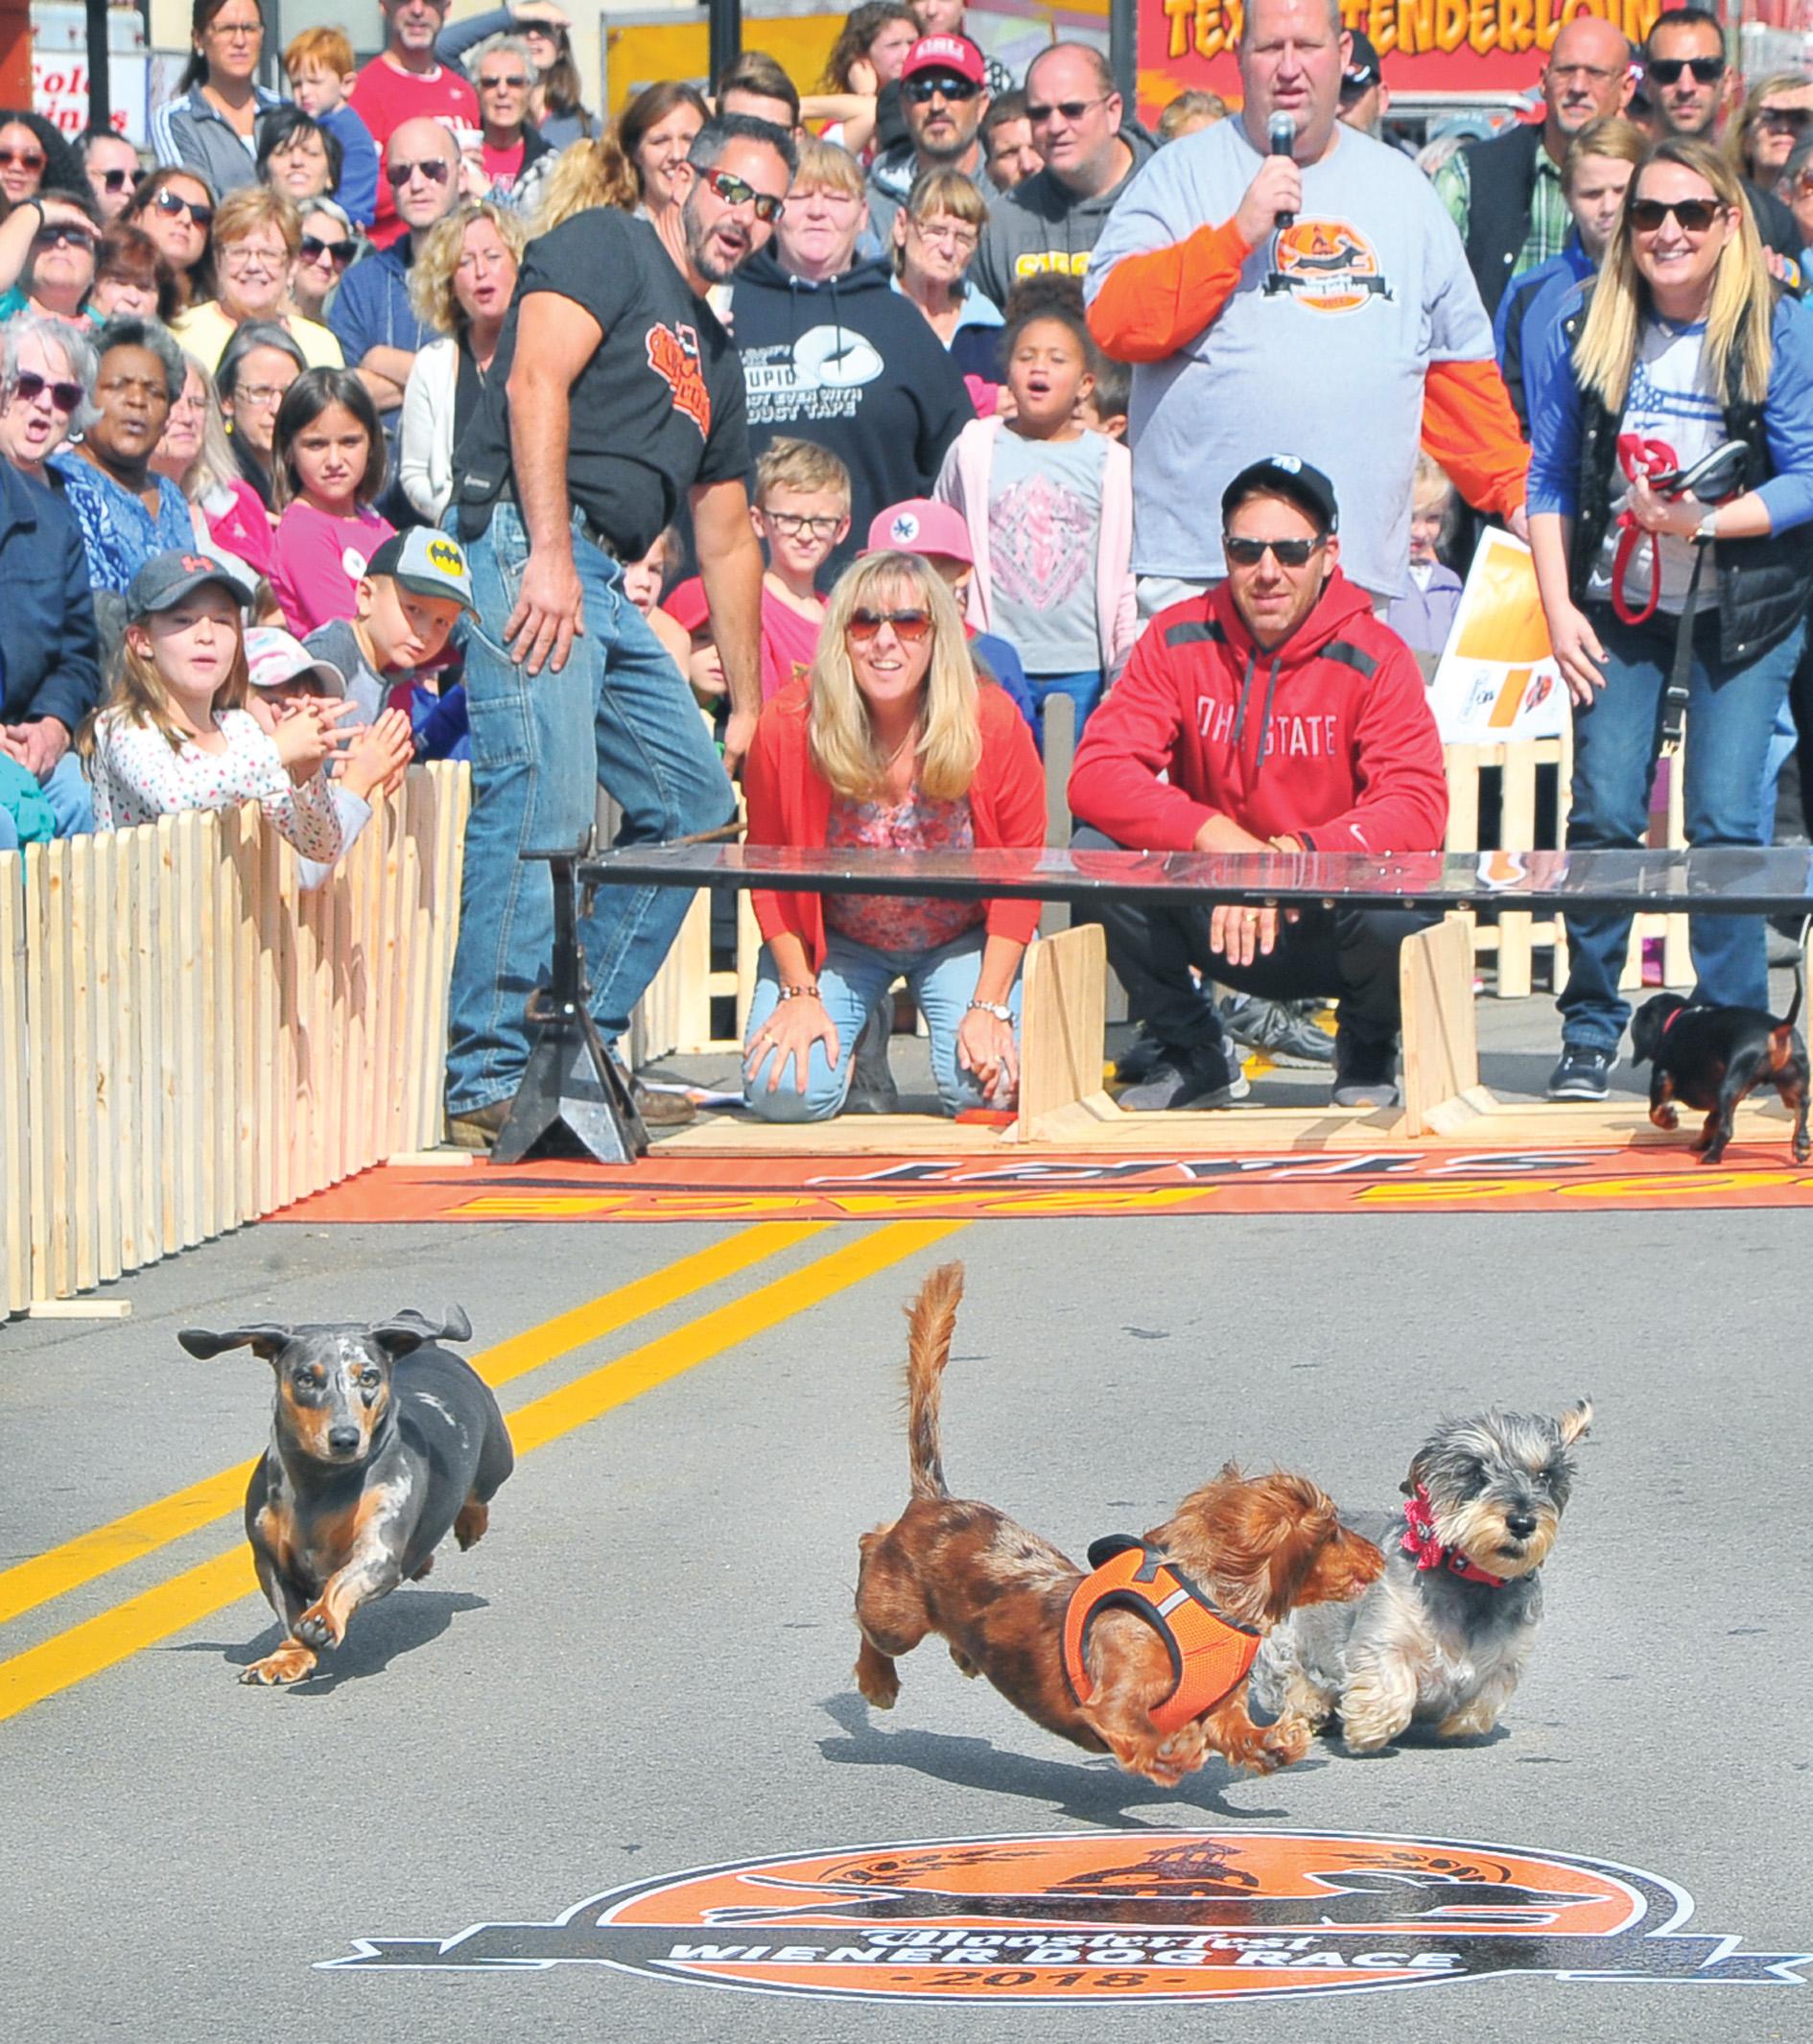 Wiener Dog Race — Woosterfest